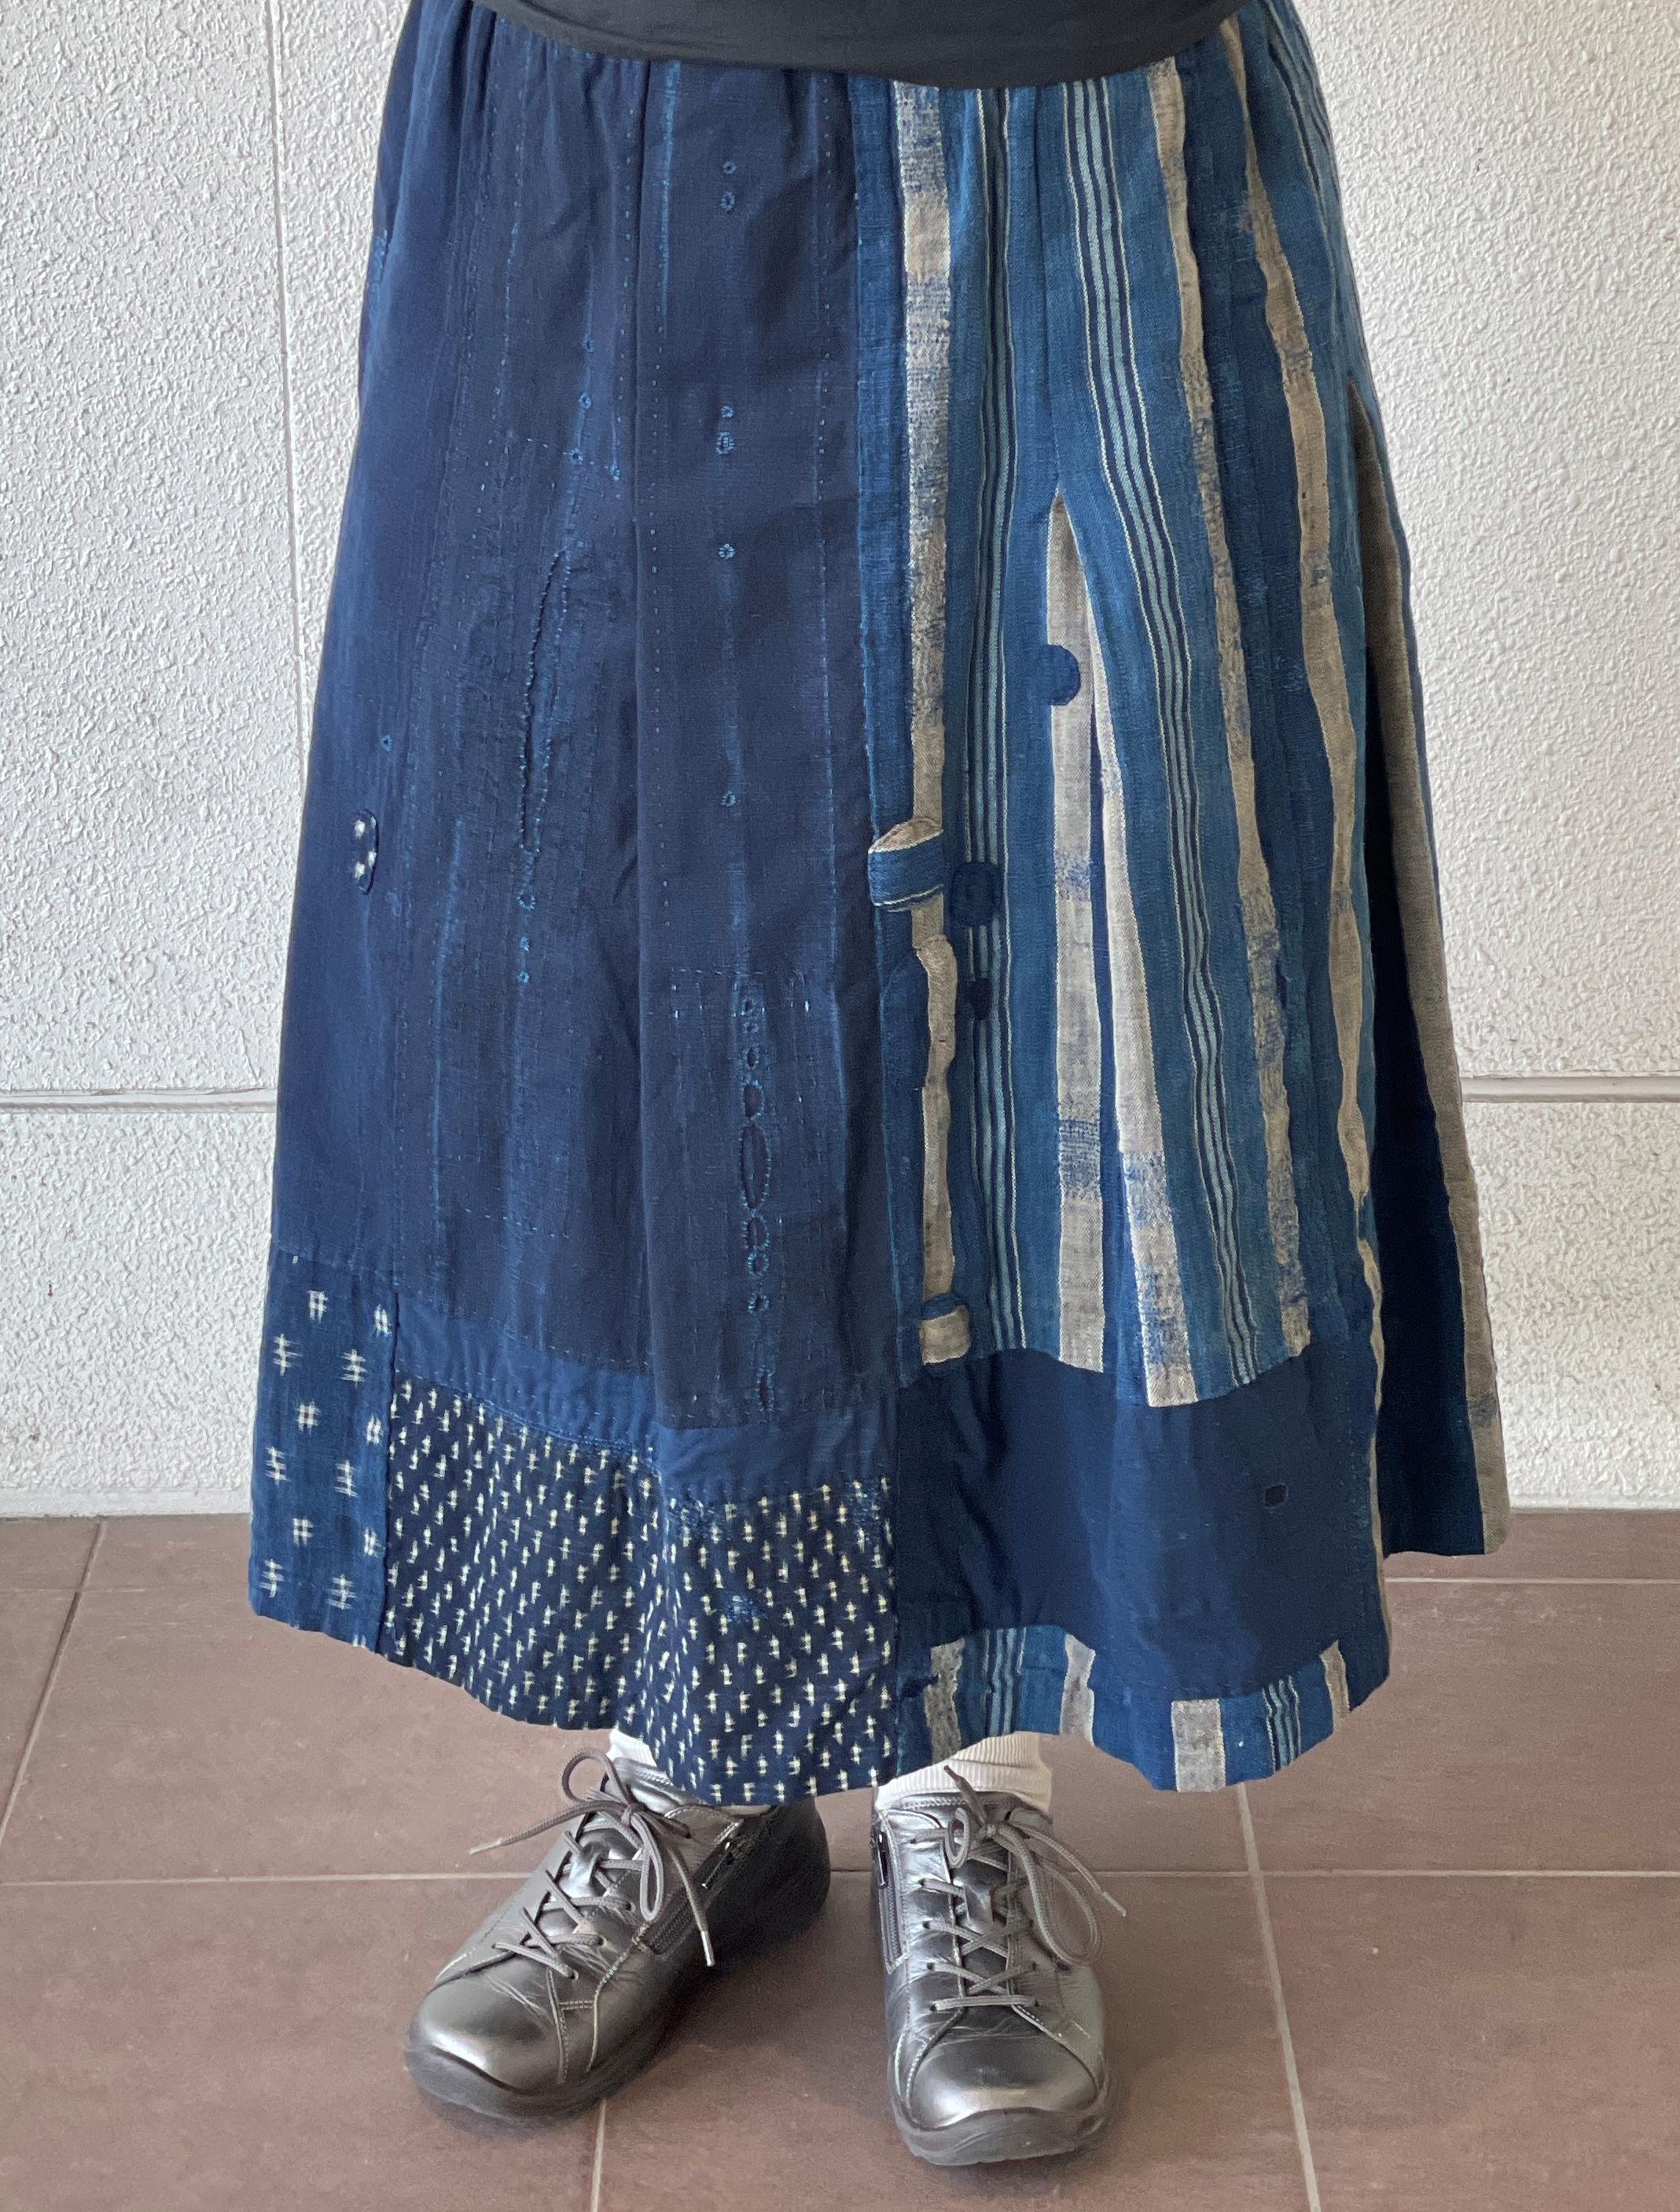 古布リメイク ぜんぶ手縫いのスカート 大人女子に シックでカワイク 1281 Iichi ハンドメイド クラフト作品 手仕事品の通販